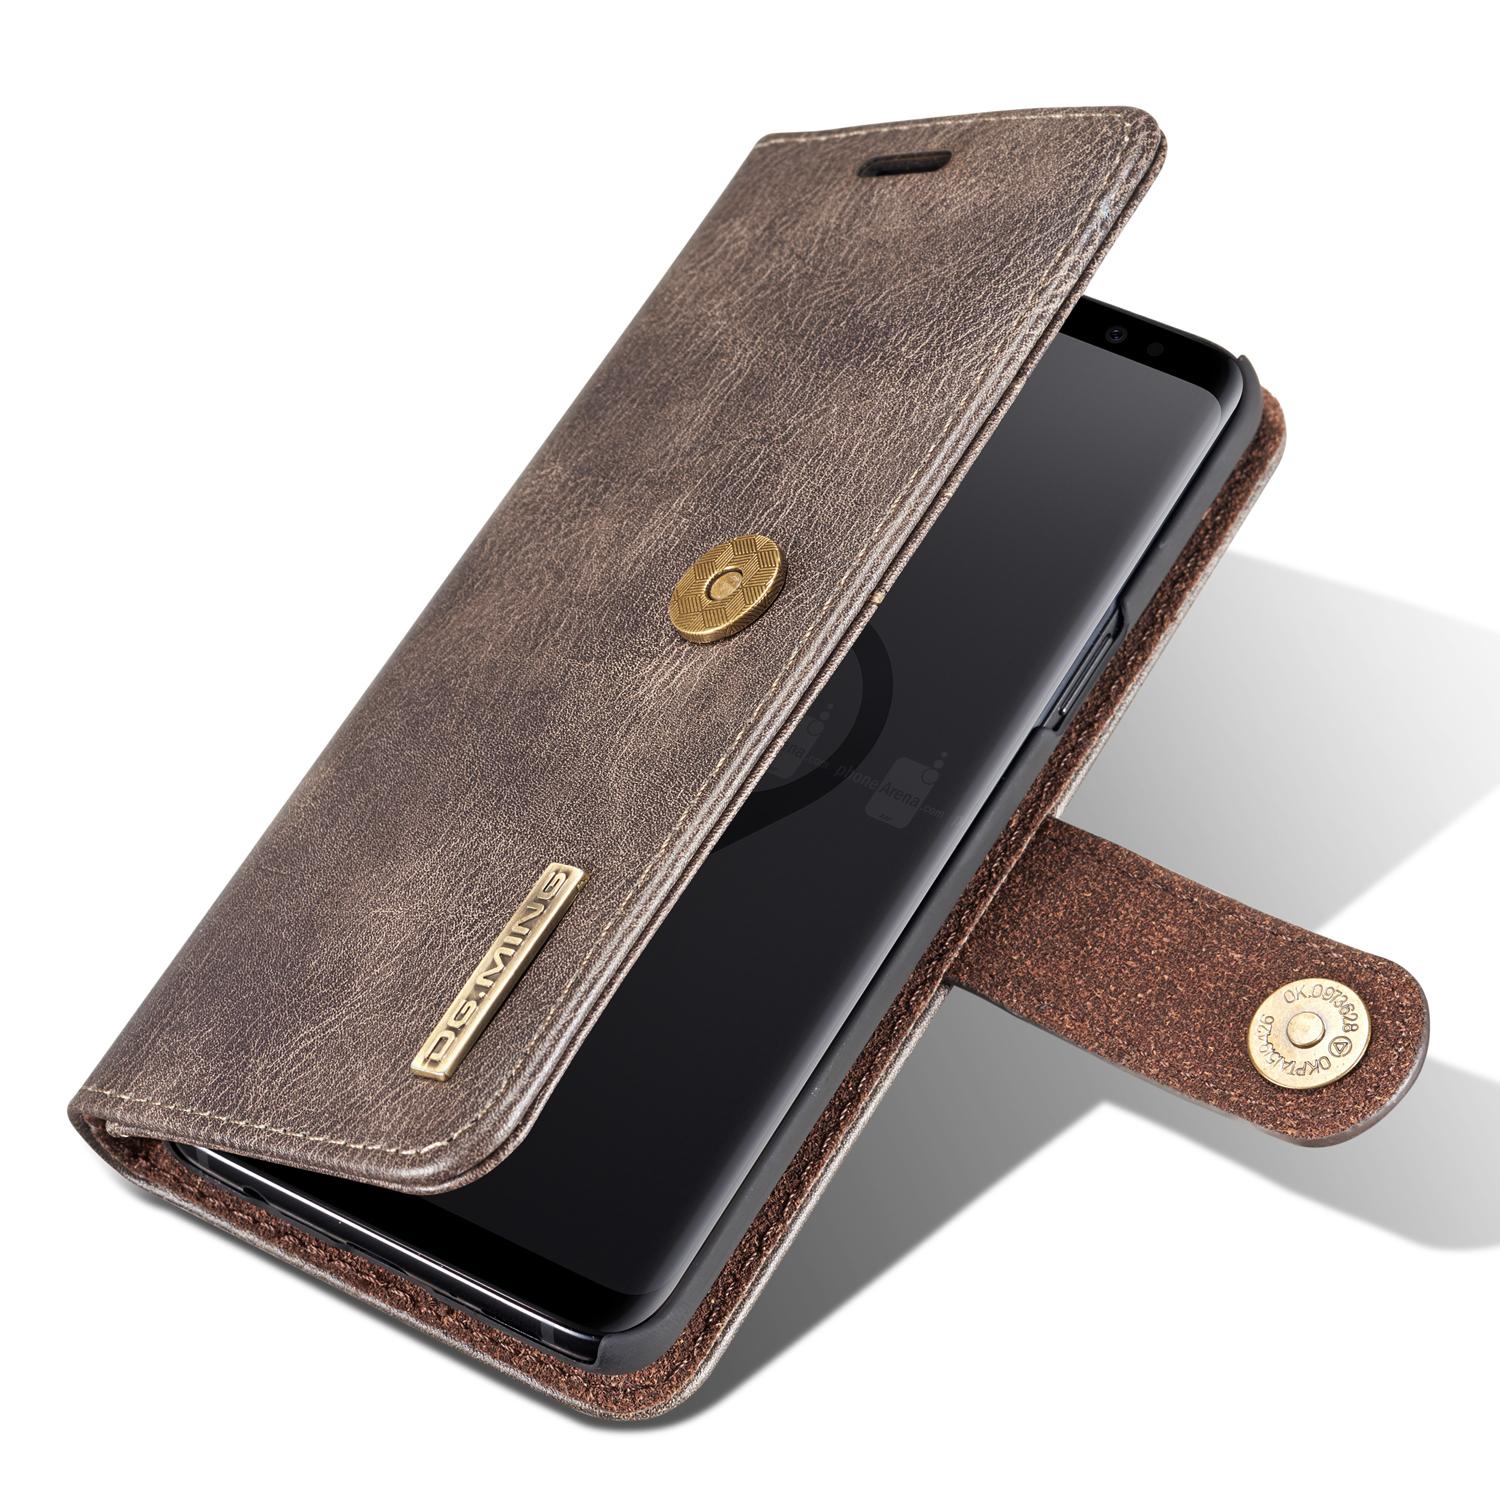 Samsung Galaxy S9 Plånboksfodral med avtagbart skal, brun